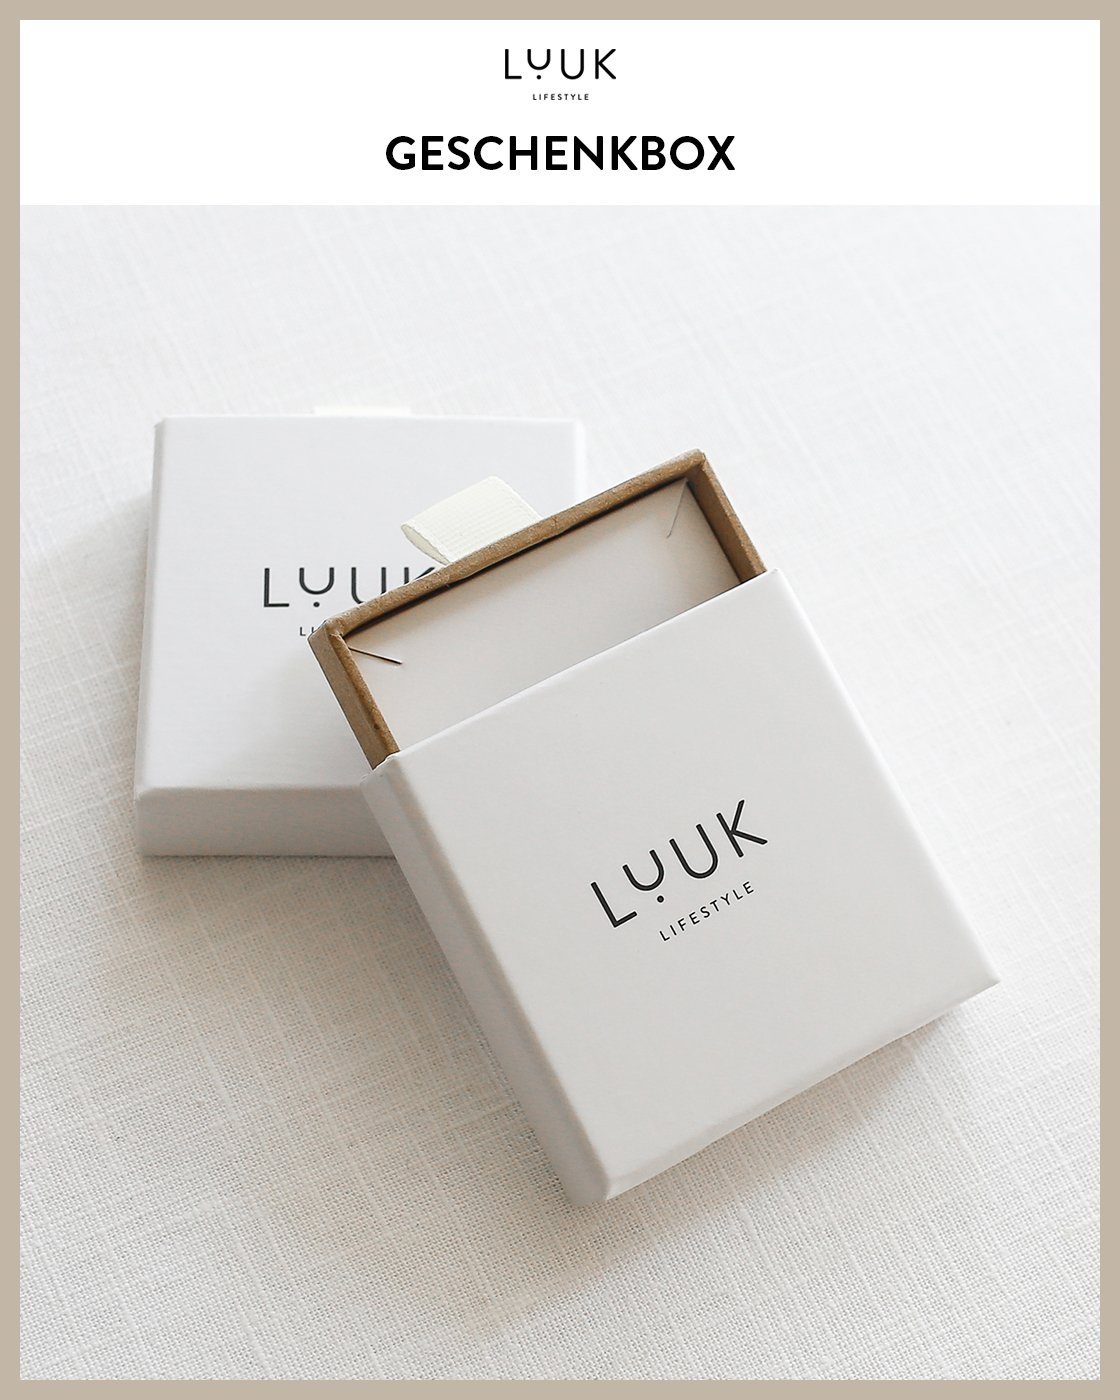 Schmuckbox LUUK toller Silber LIFESTYLE inklusive Schmuckset Rope,